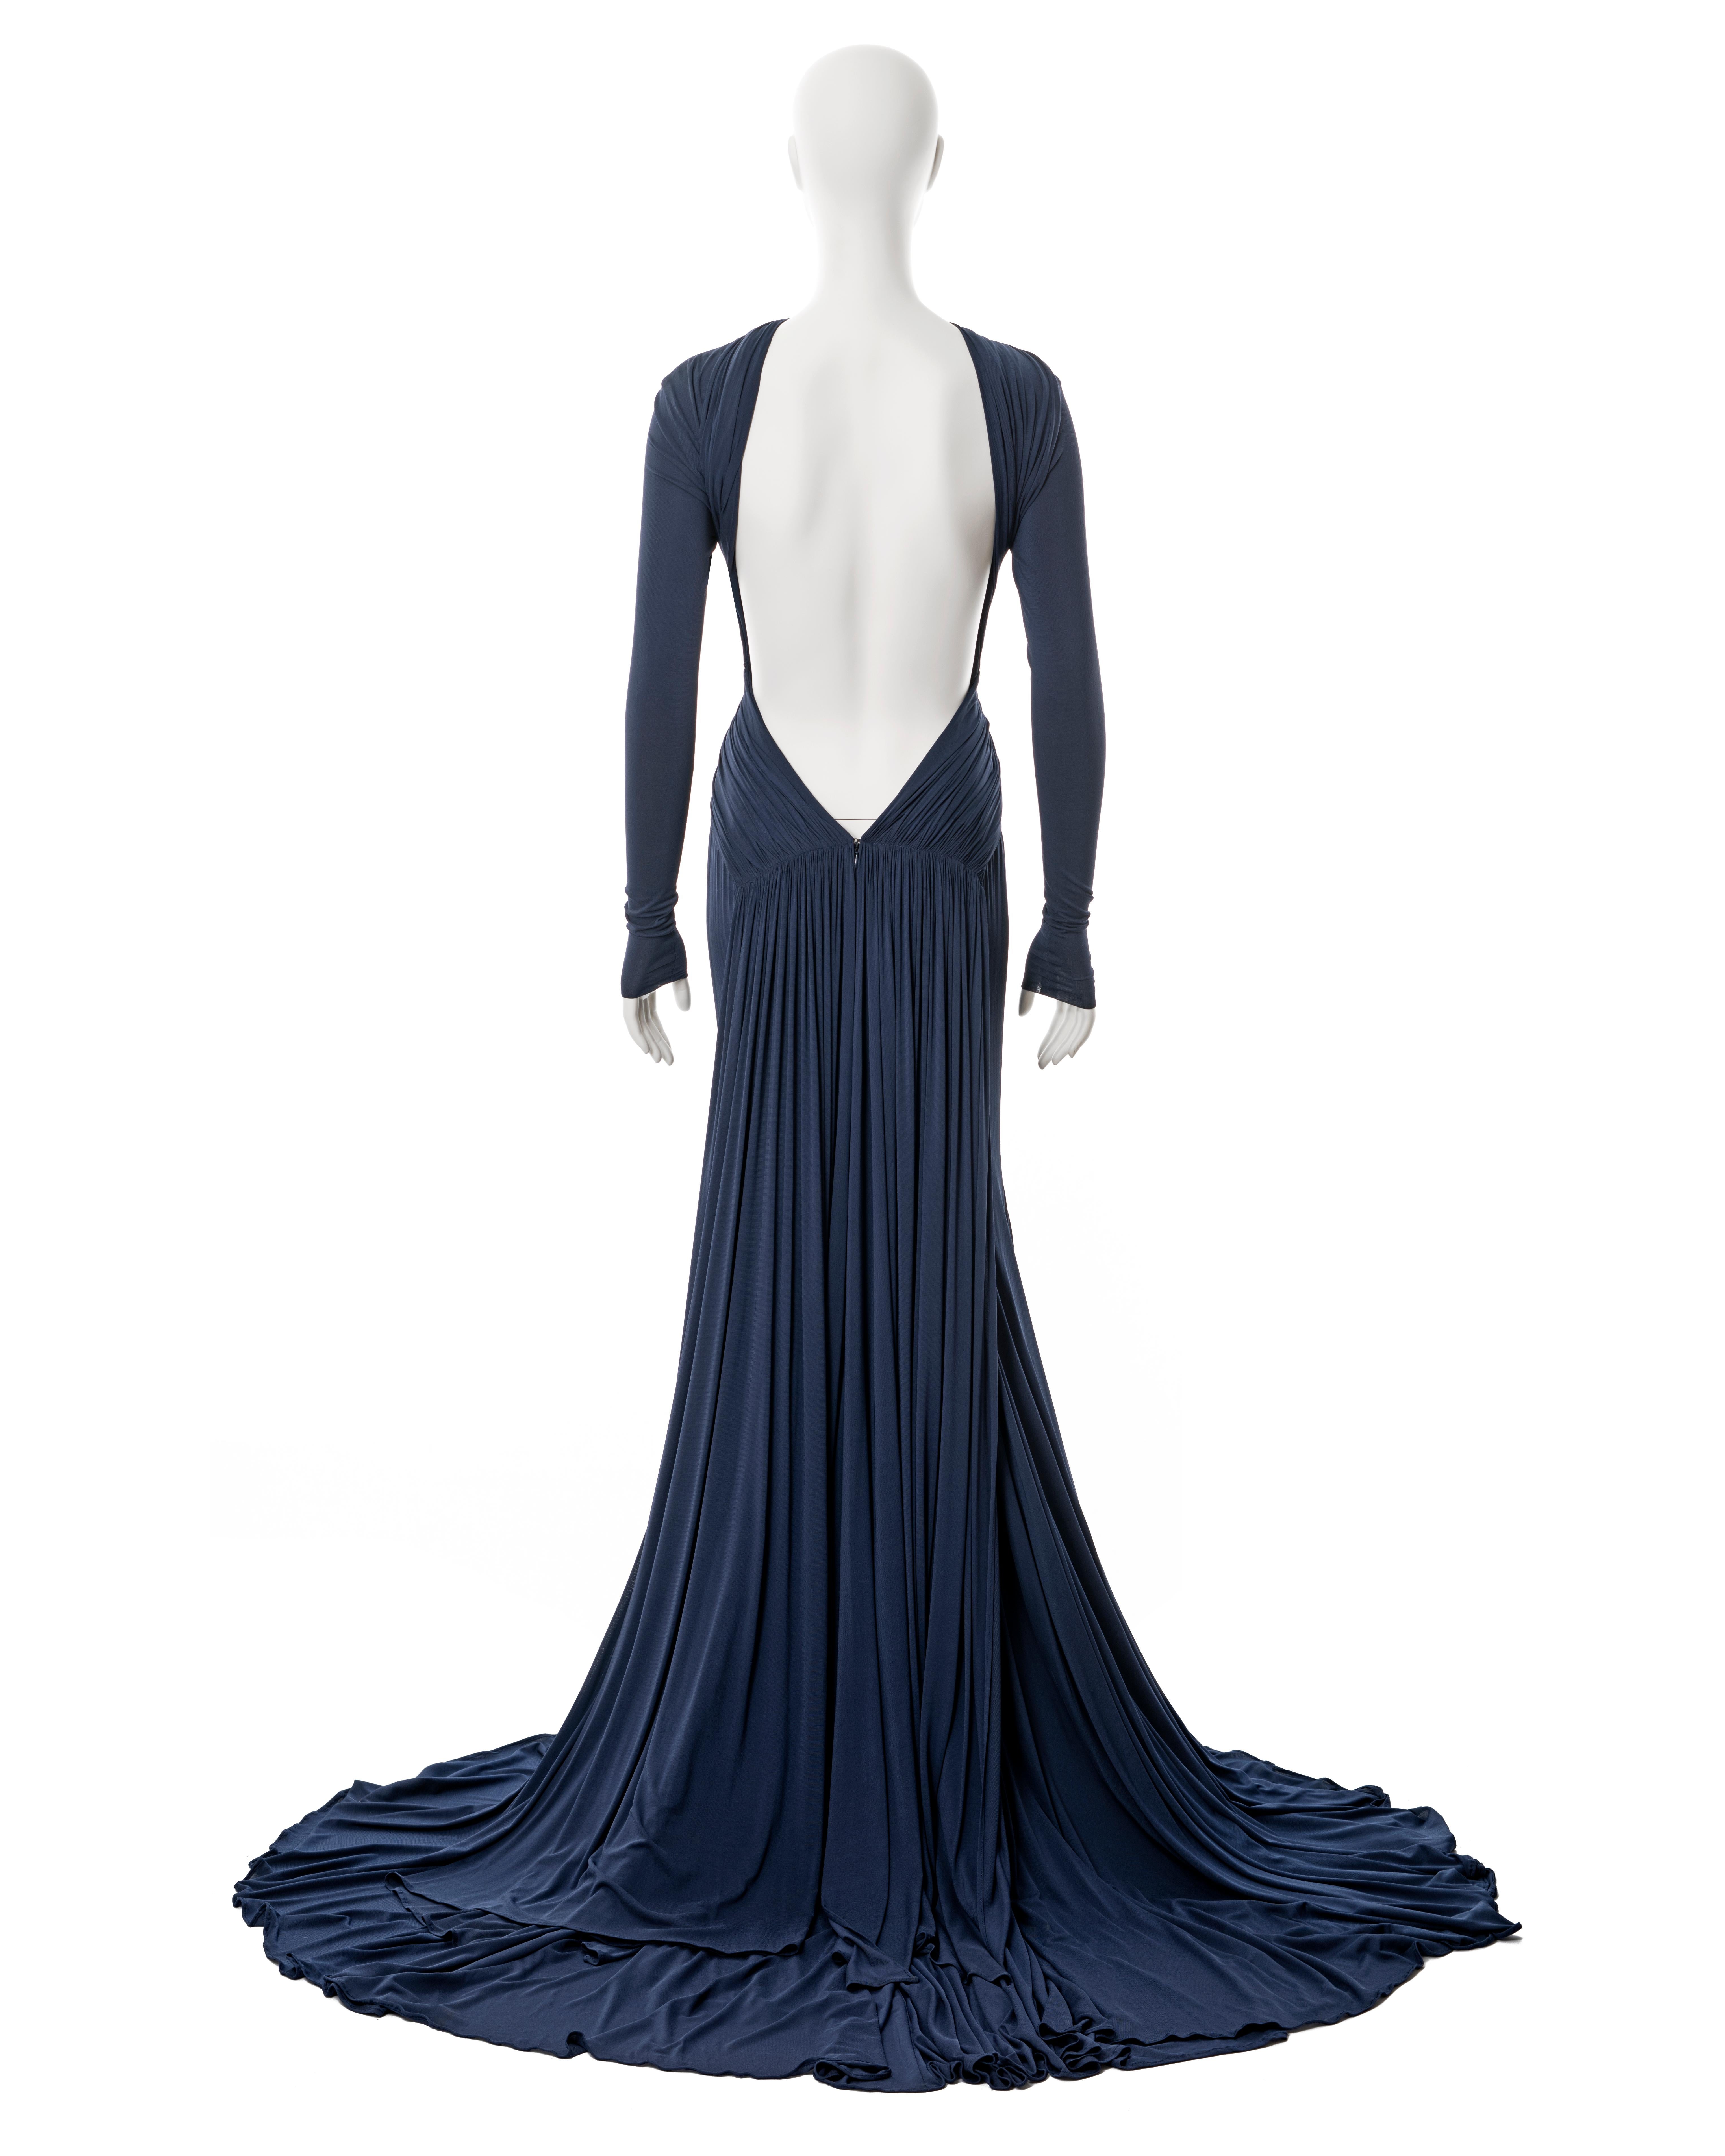 Women's Guy Laroche navy blue Oscar dress, ss 2005 For Sale